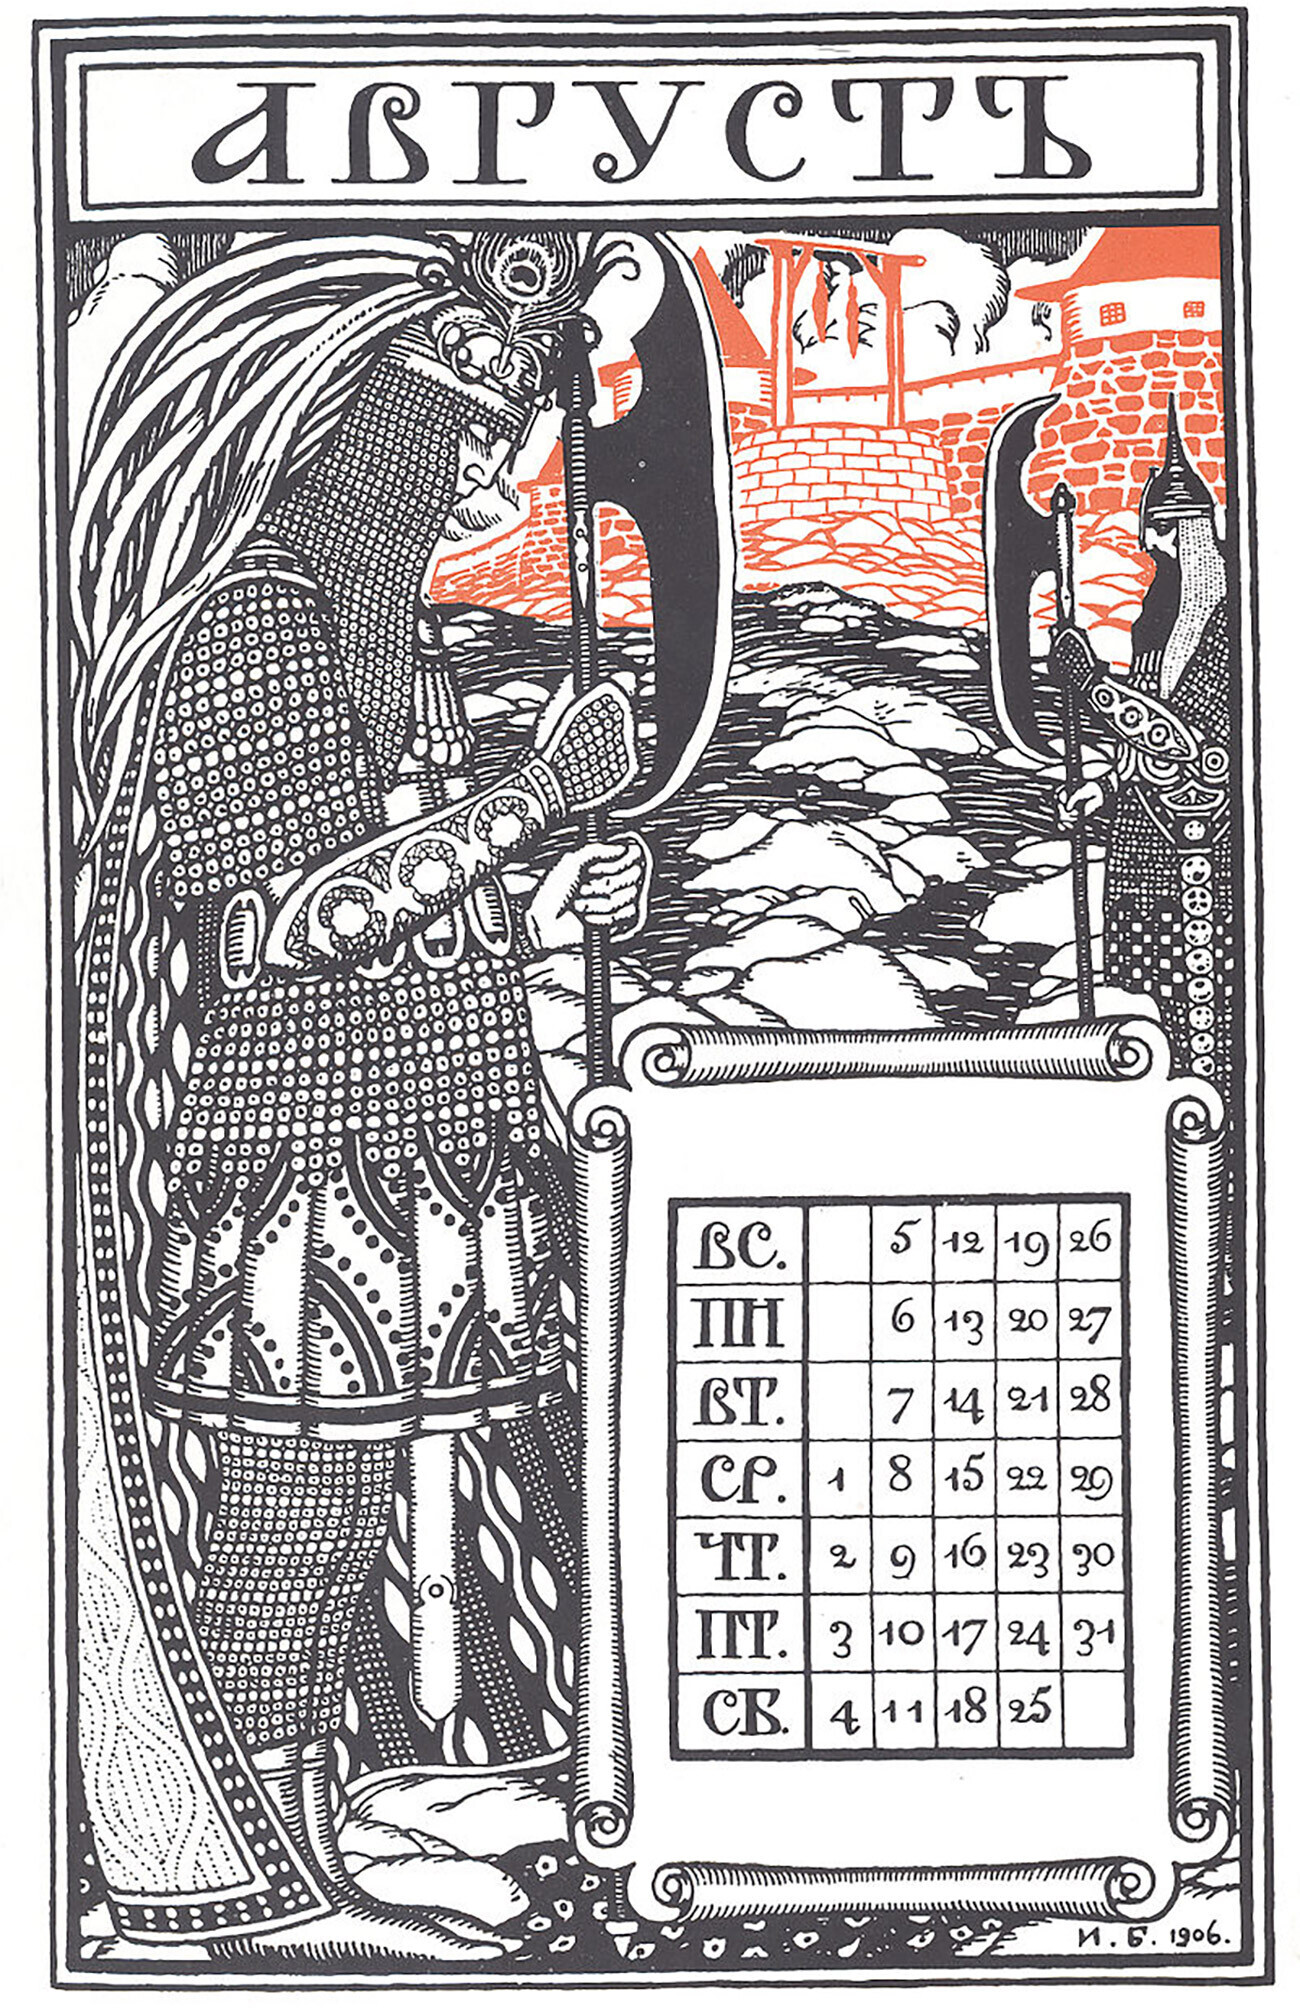 Sebuah kalender Rusia untuk Agustus 1906, dirancang oleh Ivan Bilibin. Perhatikan bahwa semua minggu dimulai pada 